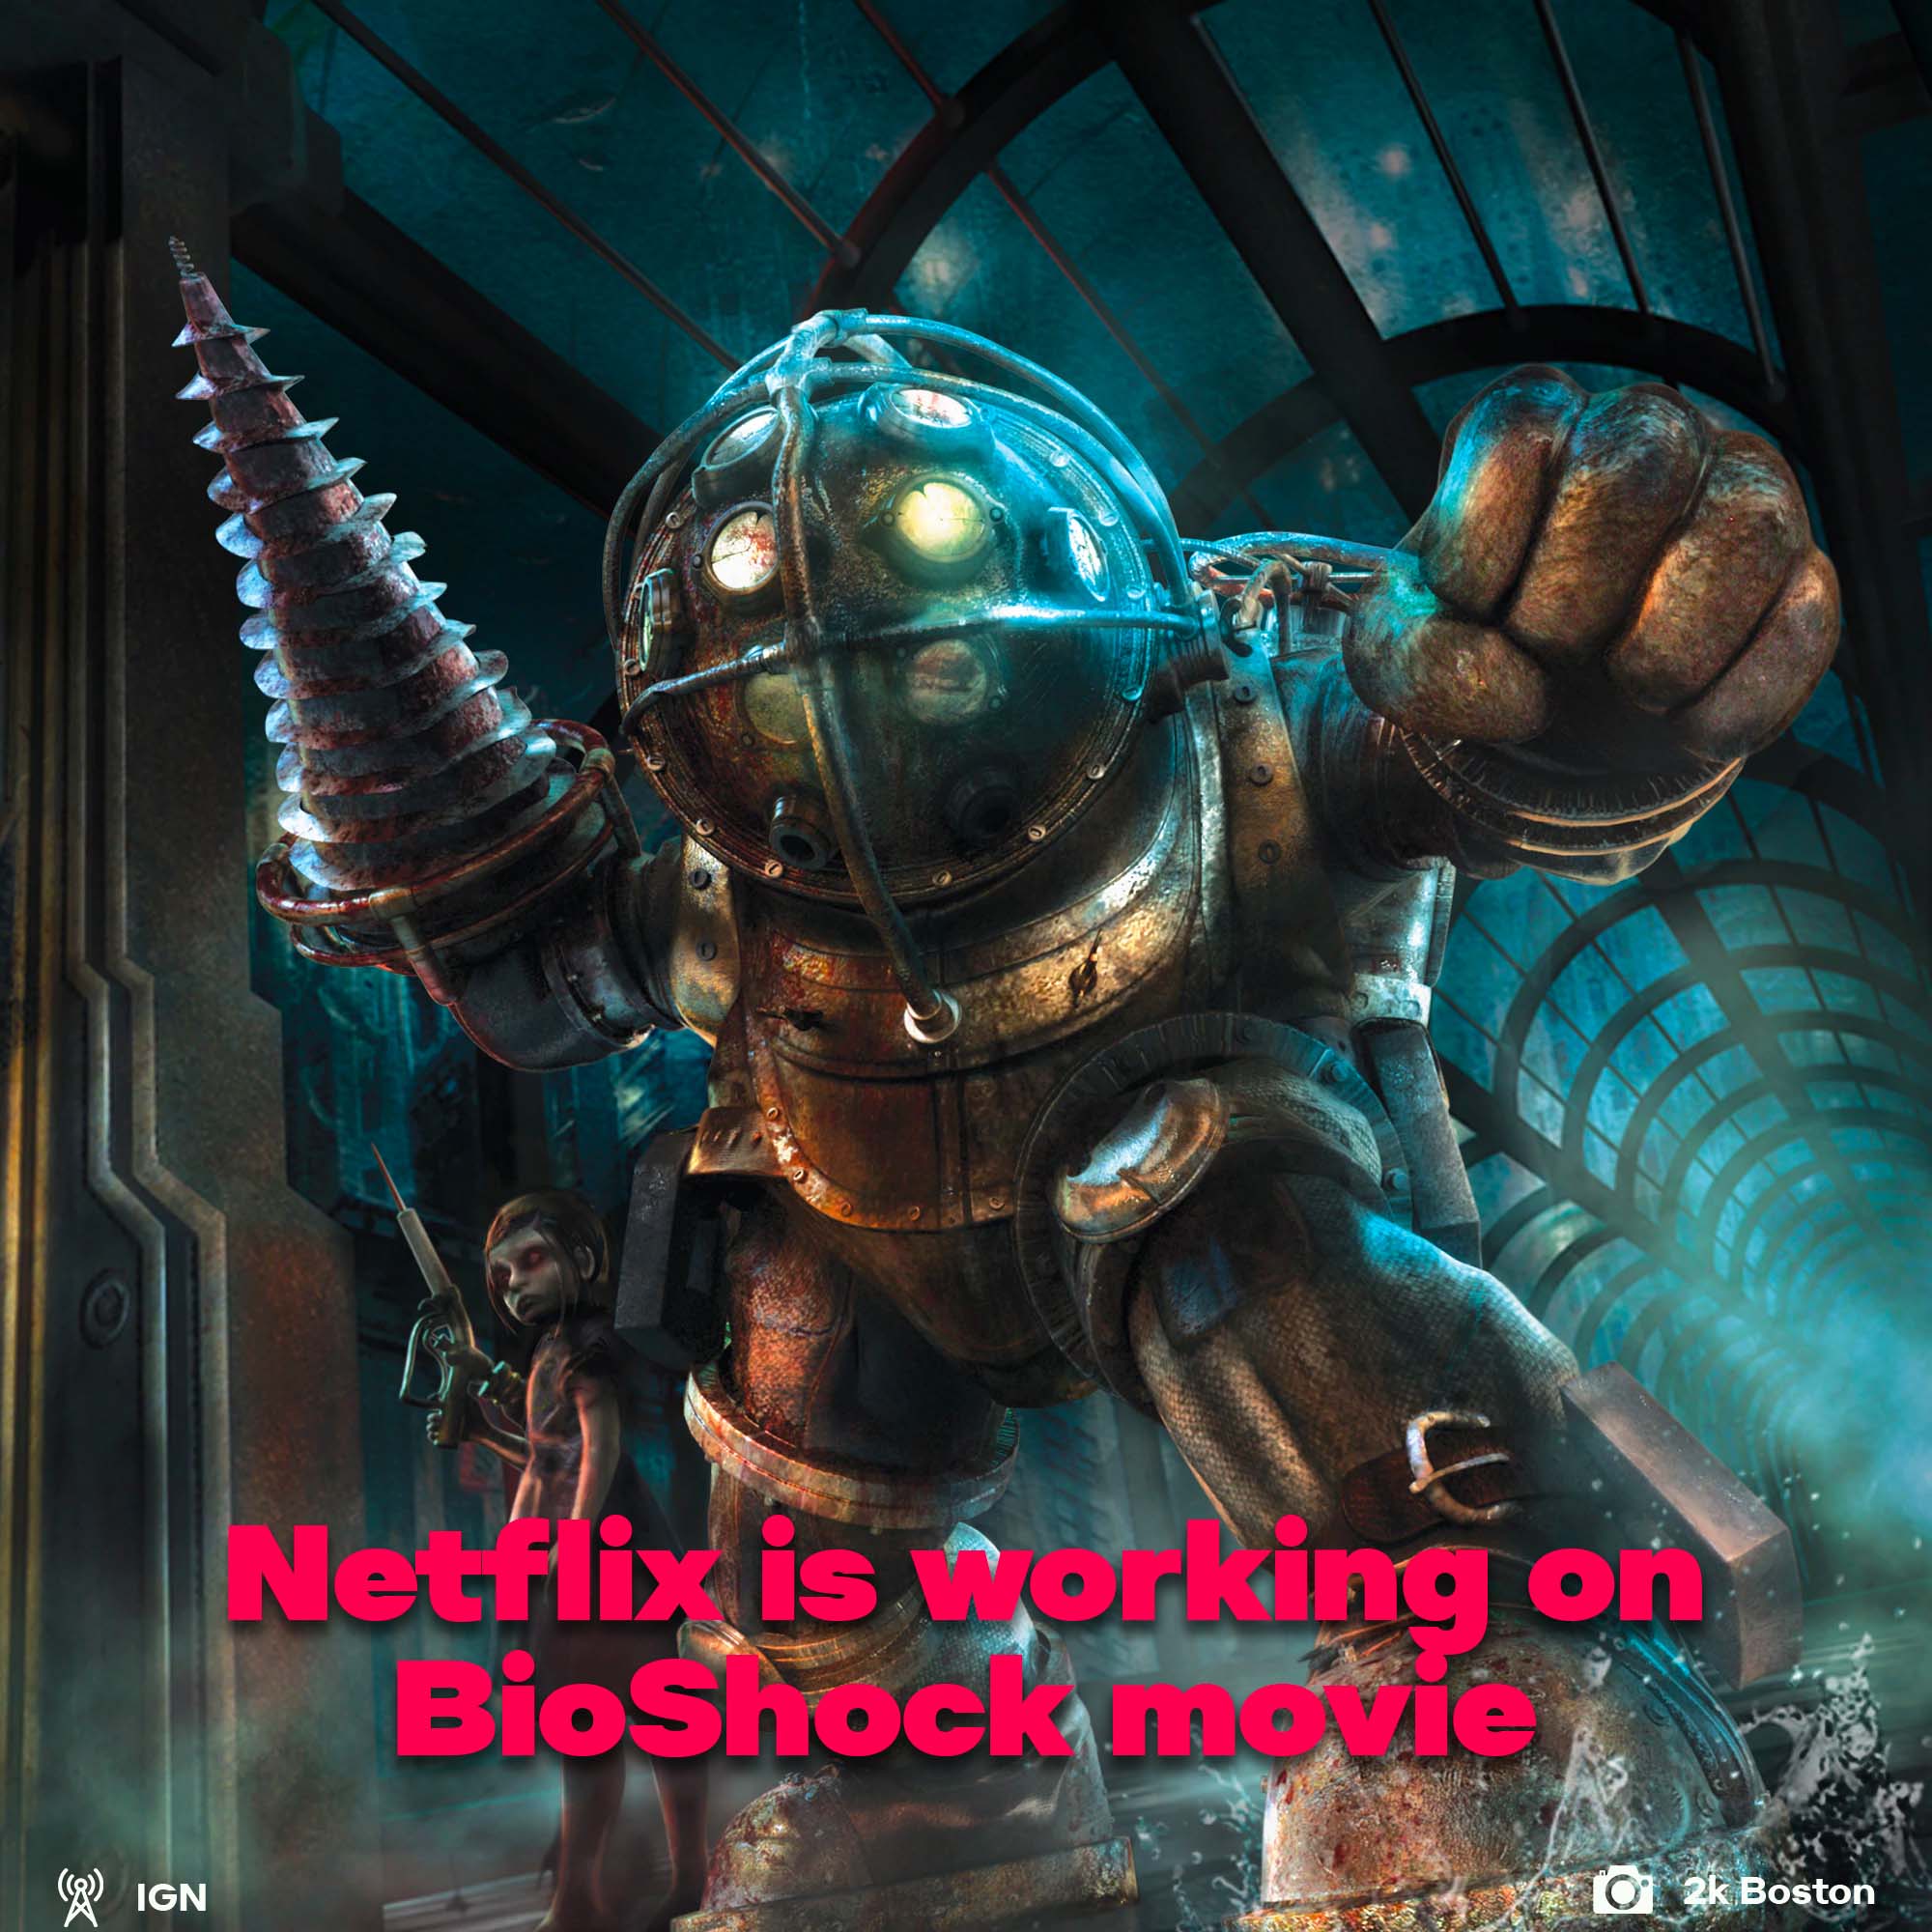 Netflix Bioshock movie